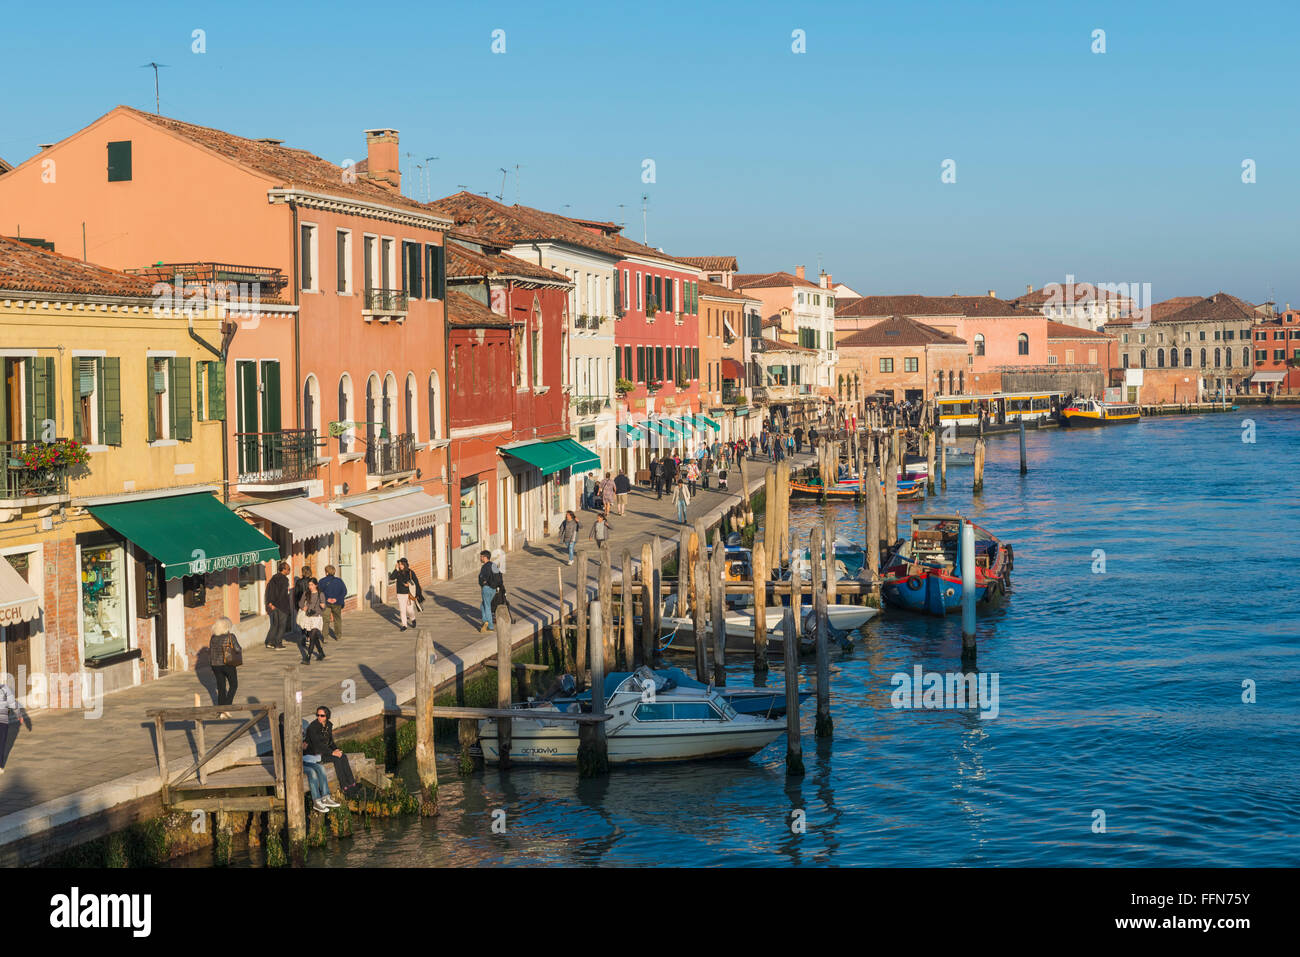 Île de Murano, Venise, Italie, Europe Banque D'Images